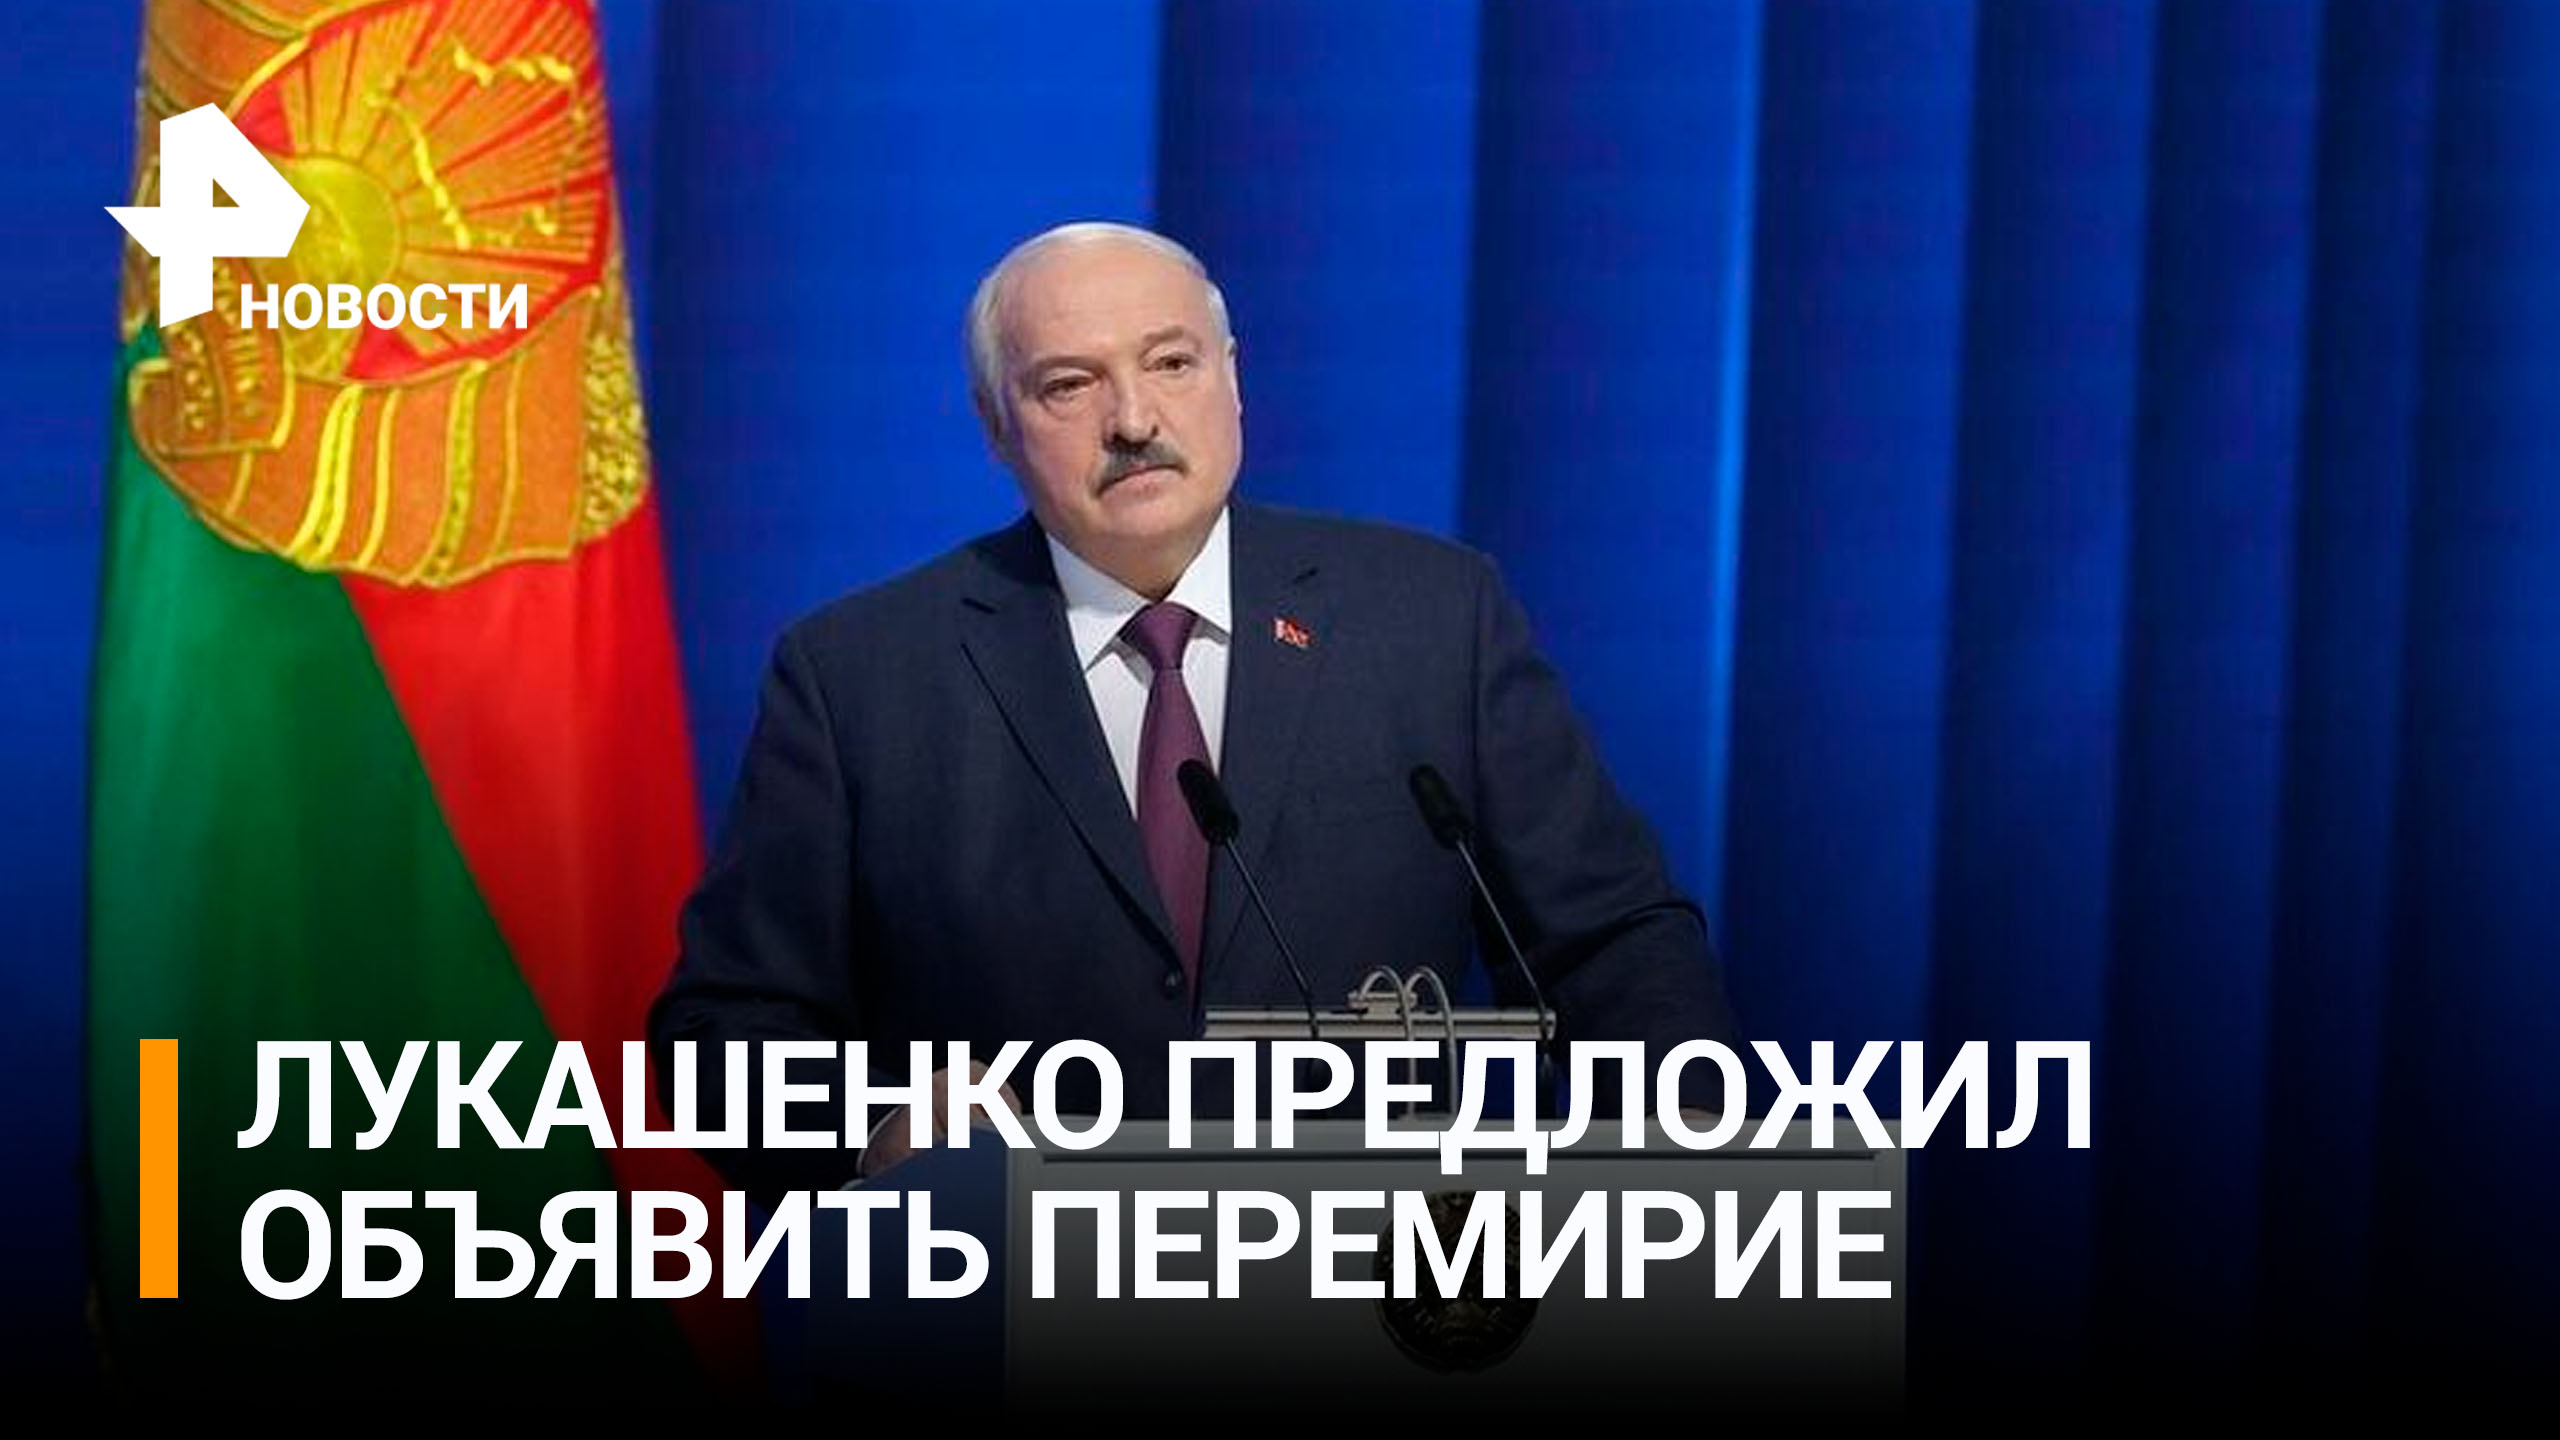 "Без права перемещения войск": Лукашенко призвал к перемирию на Украине / РЕН Новости